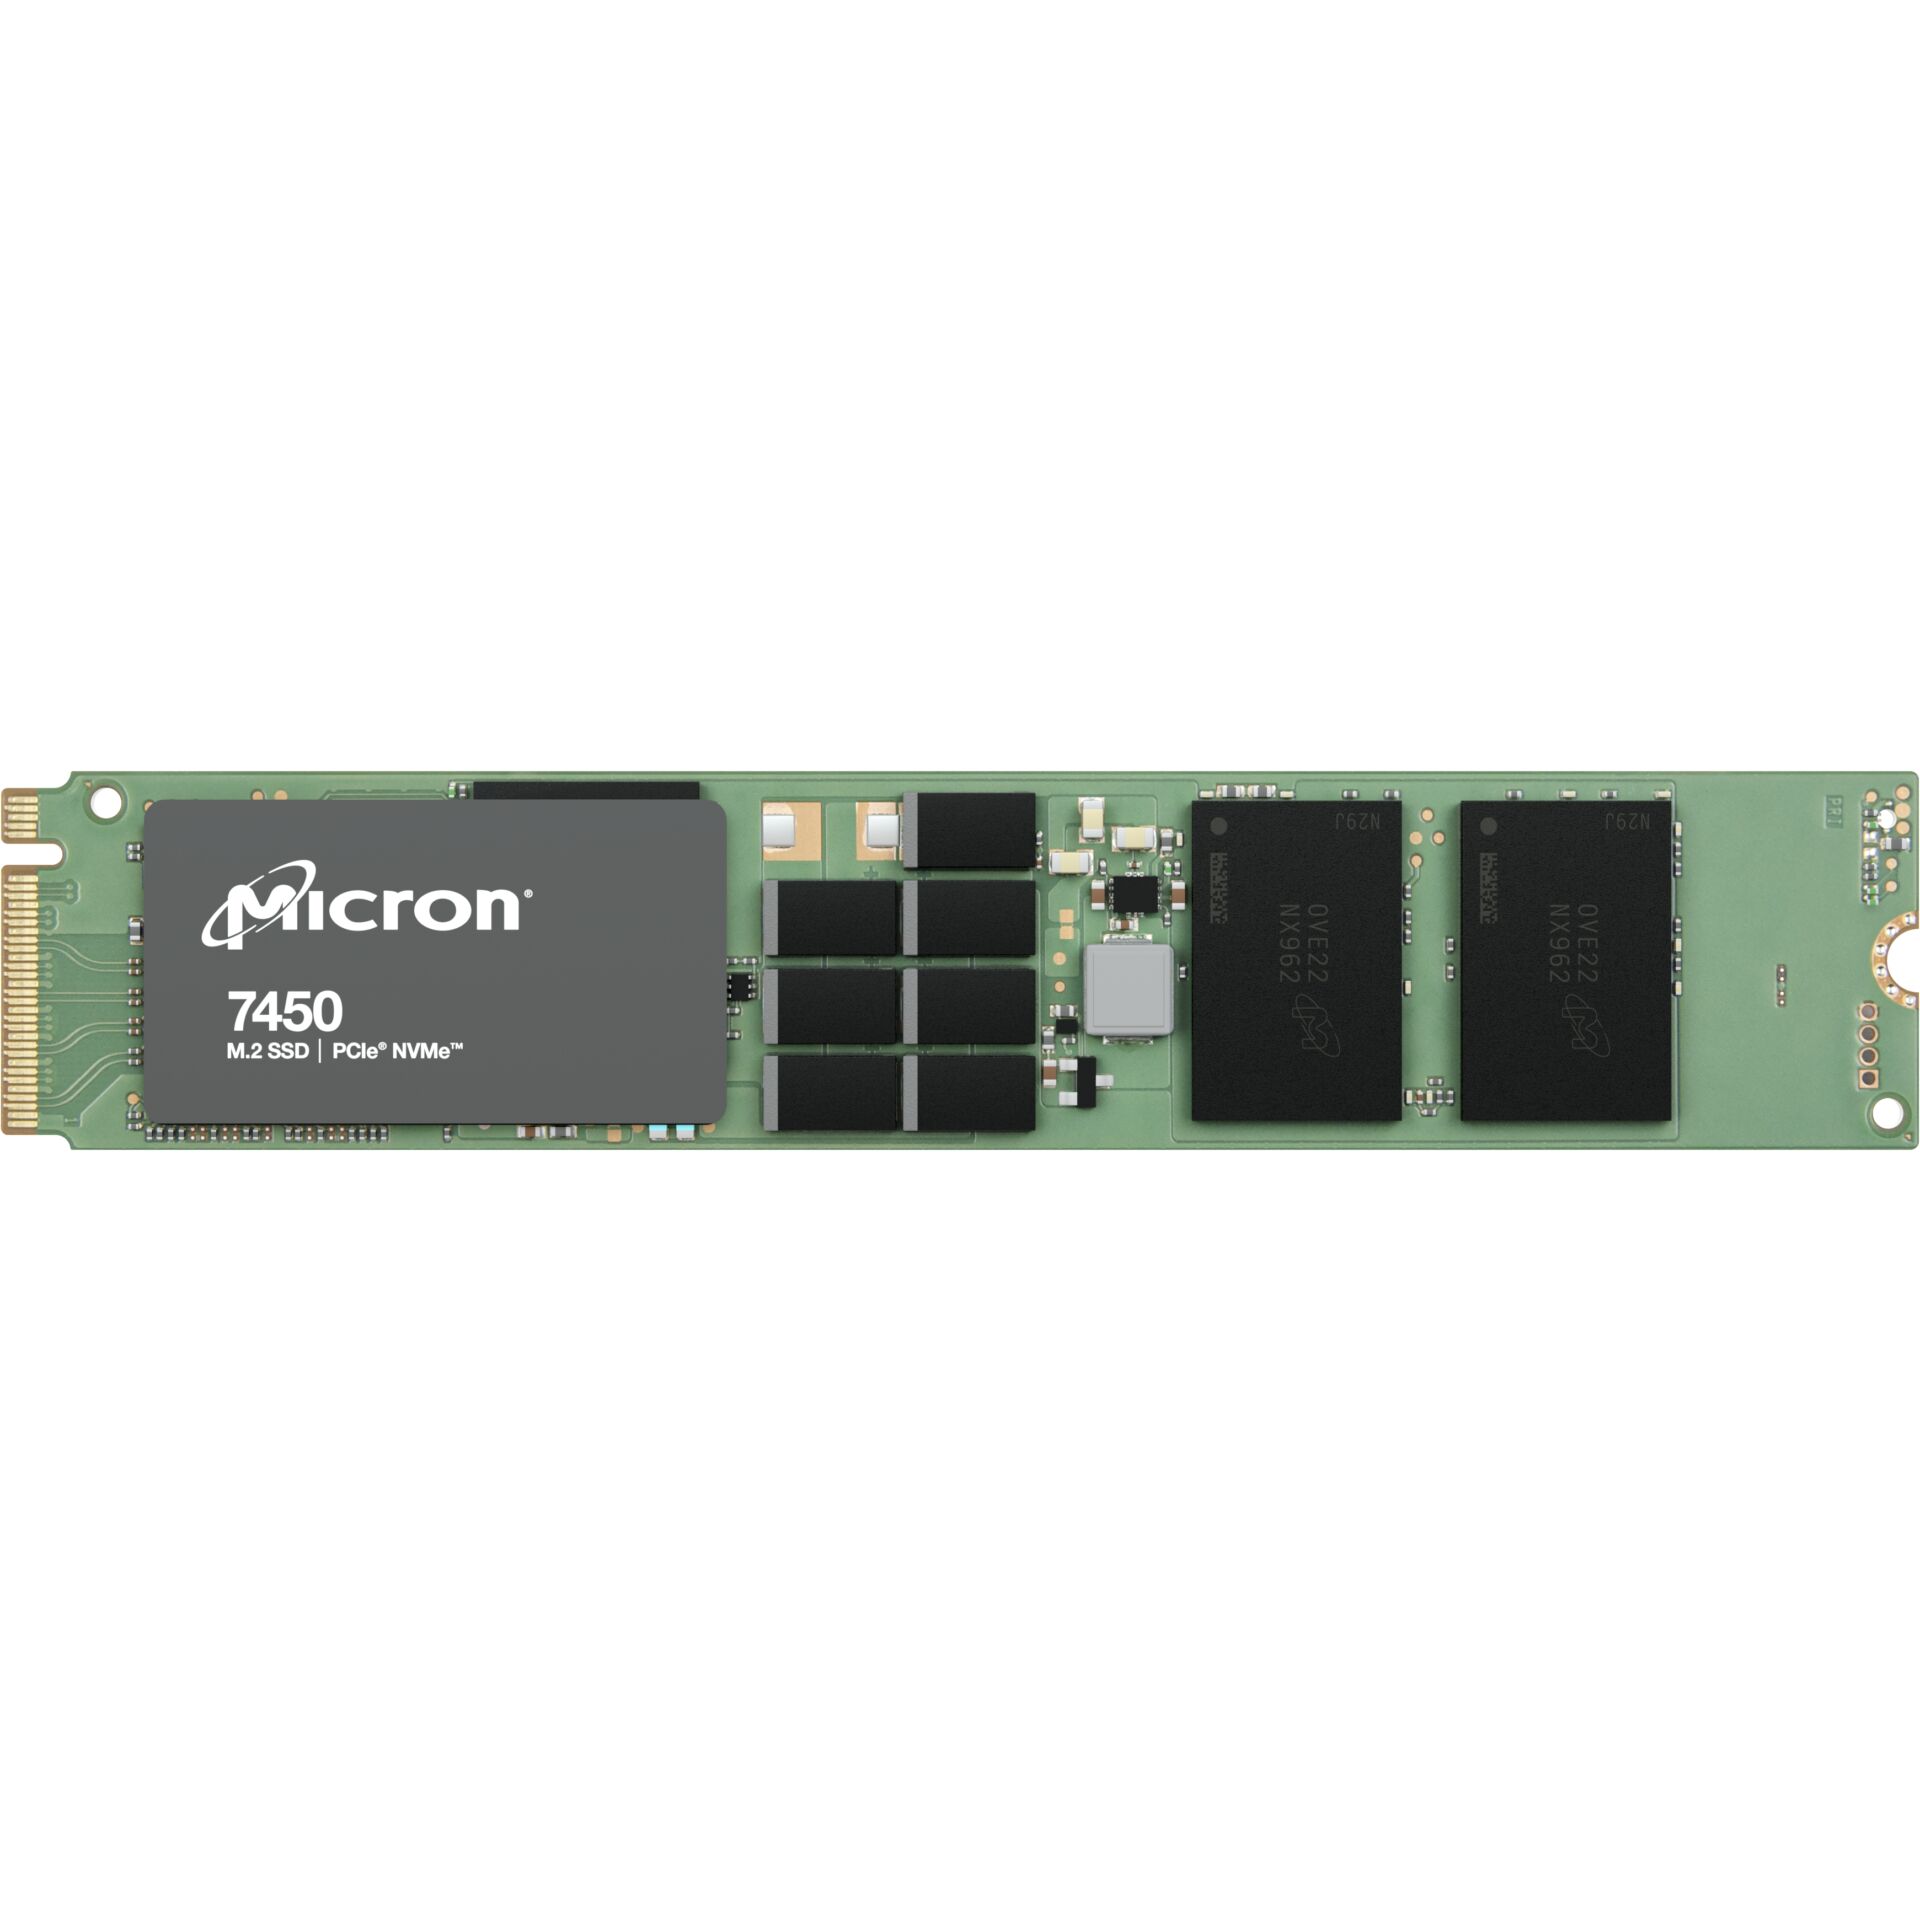 MICRON 7450 PRO 1920GB NVMe M.2 (22x110) Non-SED Enterprise SSD [Single Pack]